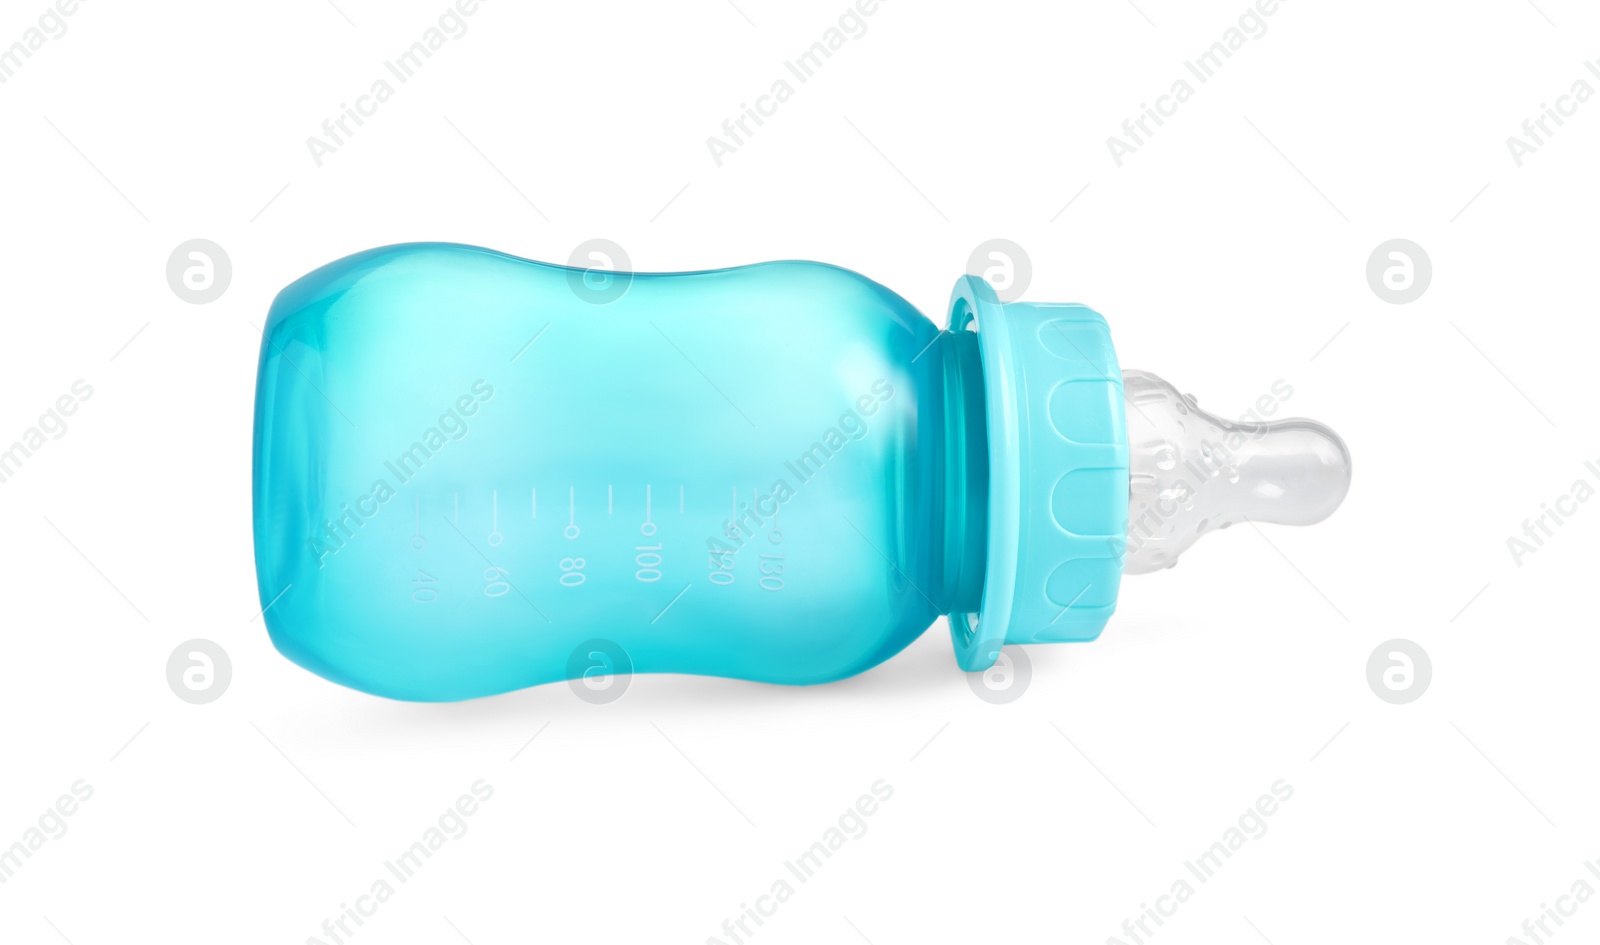 Photo of Empty turquoise feeding bottle for infant formula isolated on white